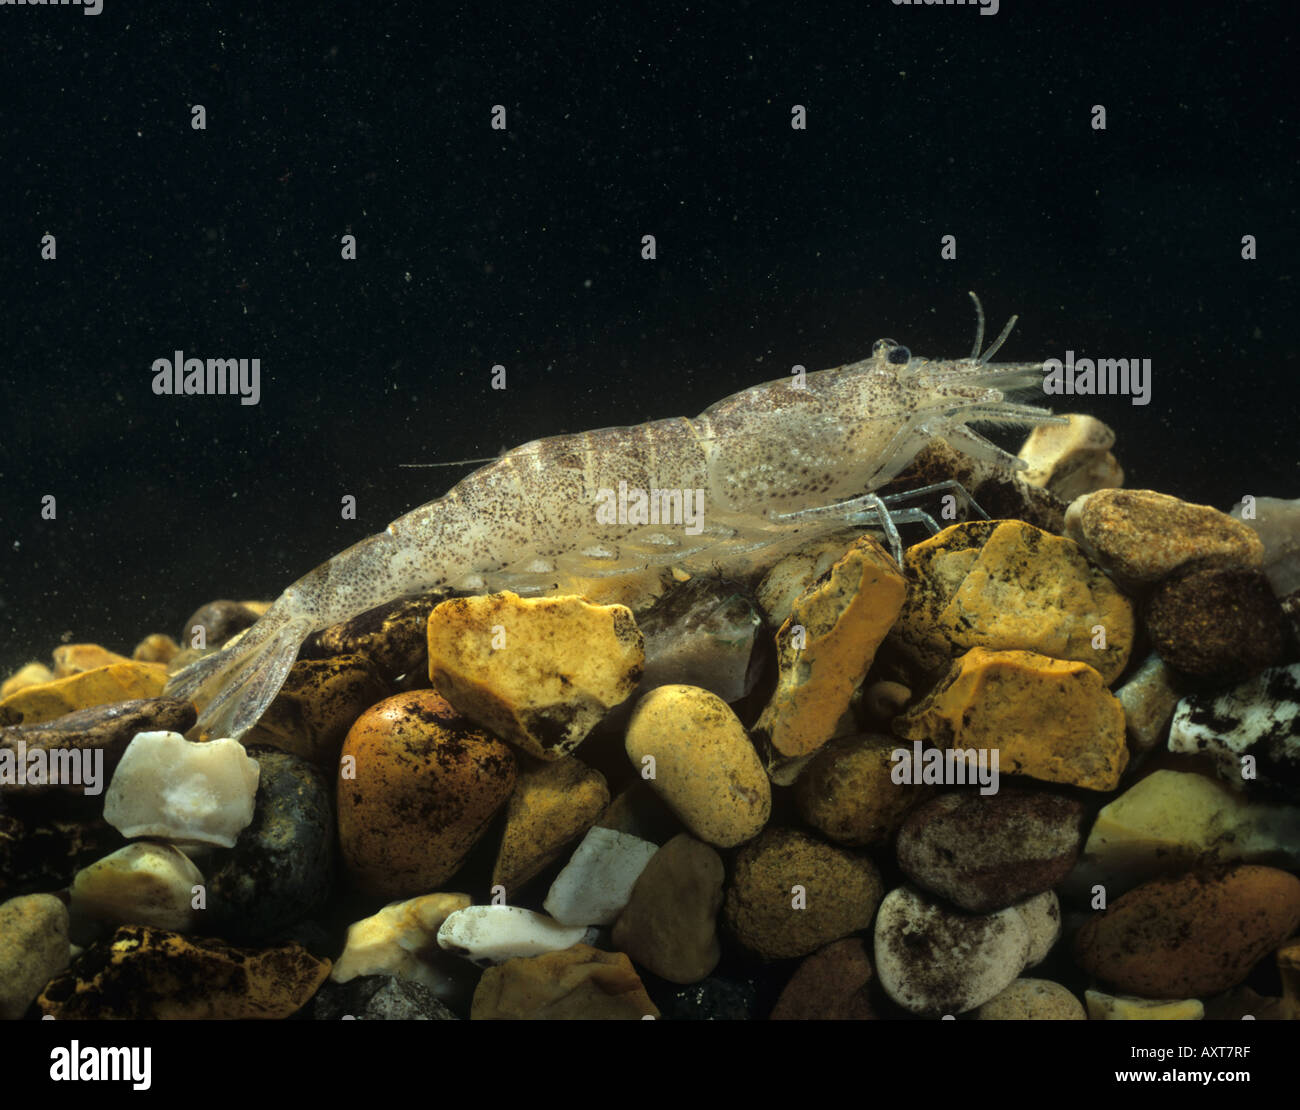 Crevette Crangon crangon utilisé comme espèce indicatrice dans les études de toxicologie chimique Banque D'Images